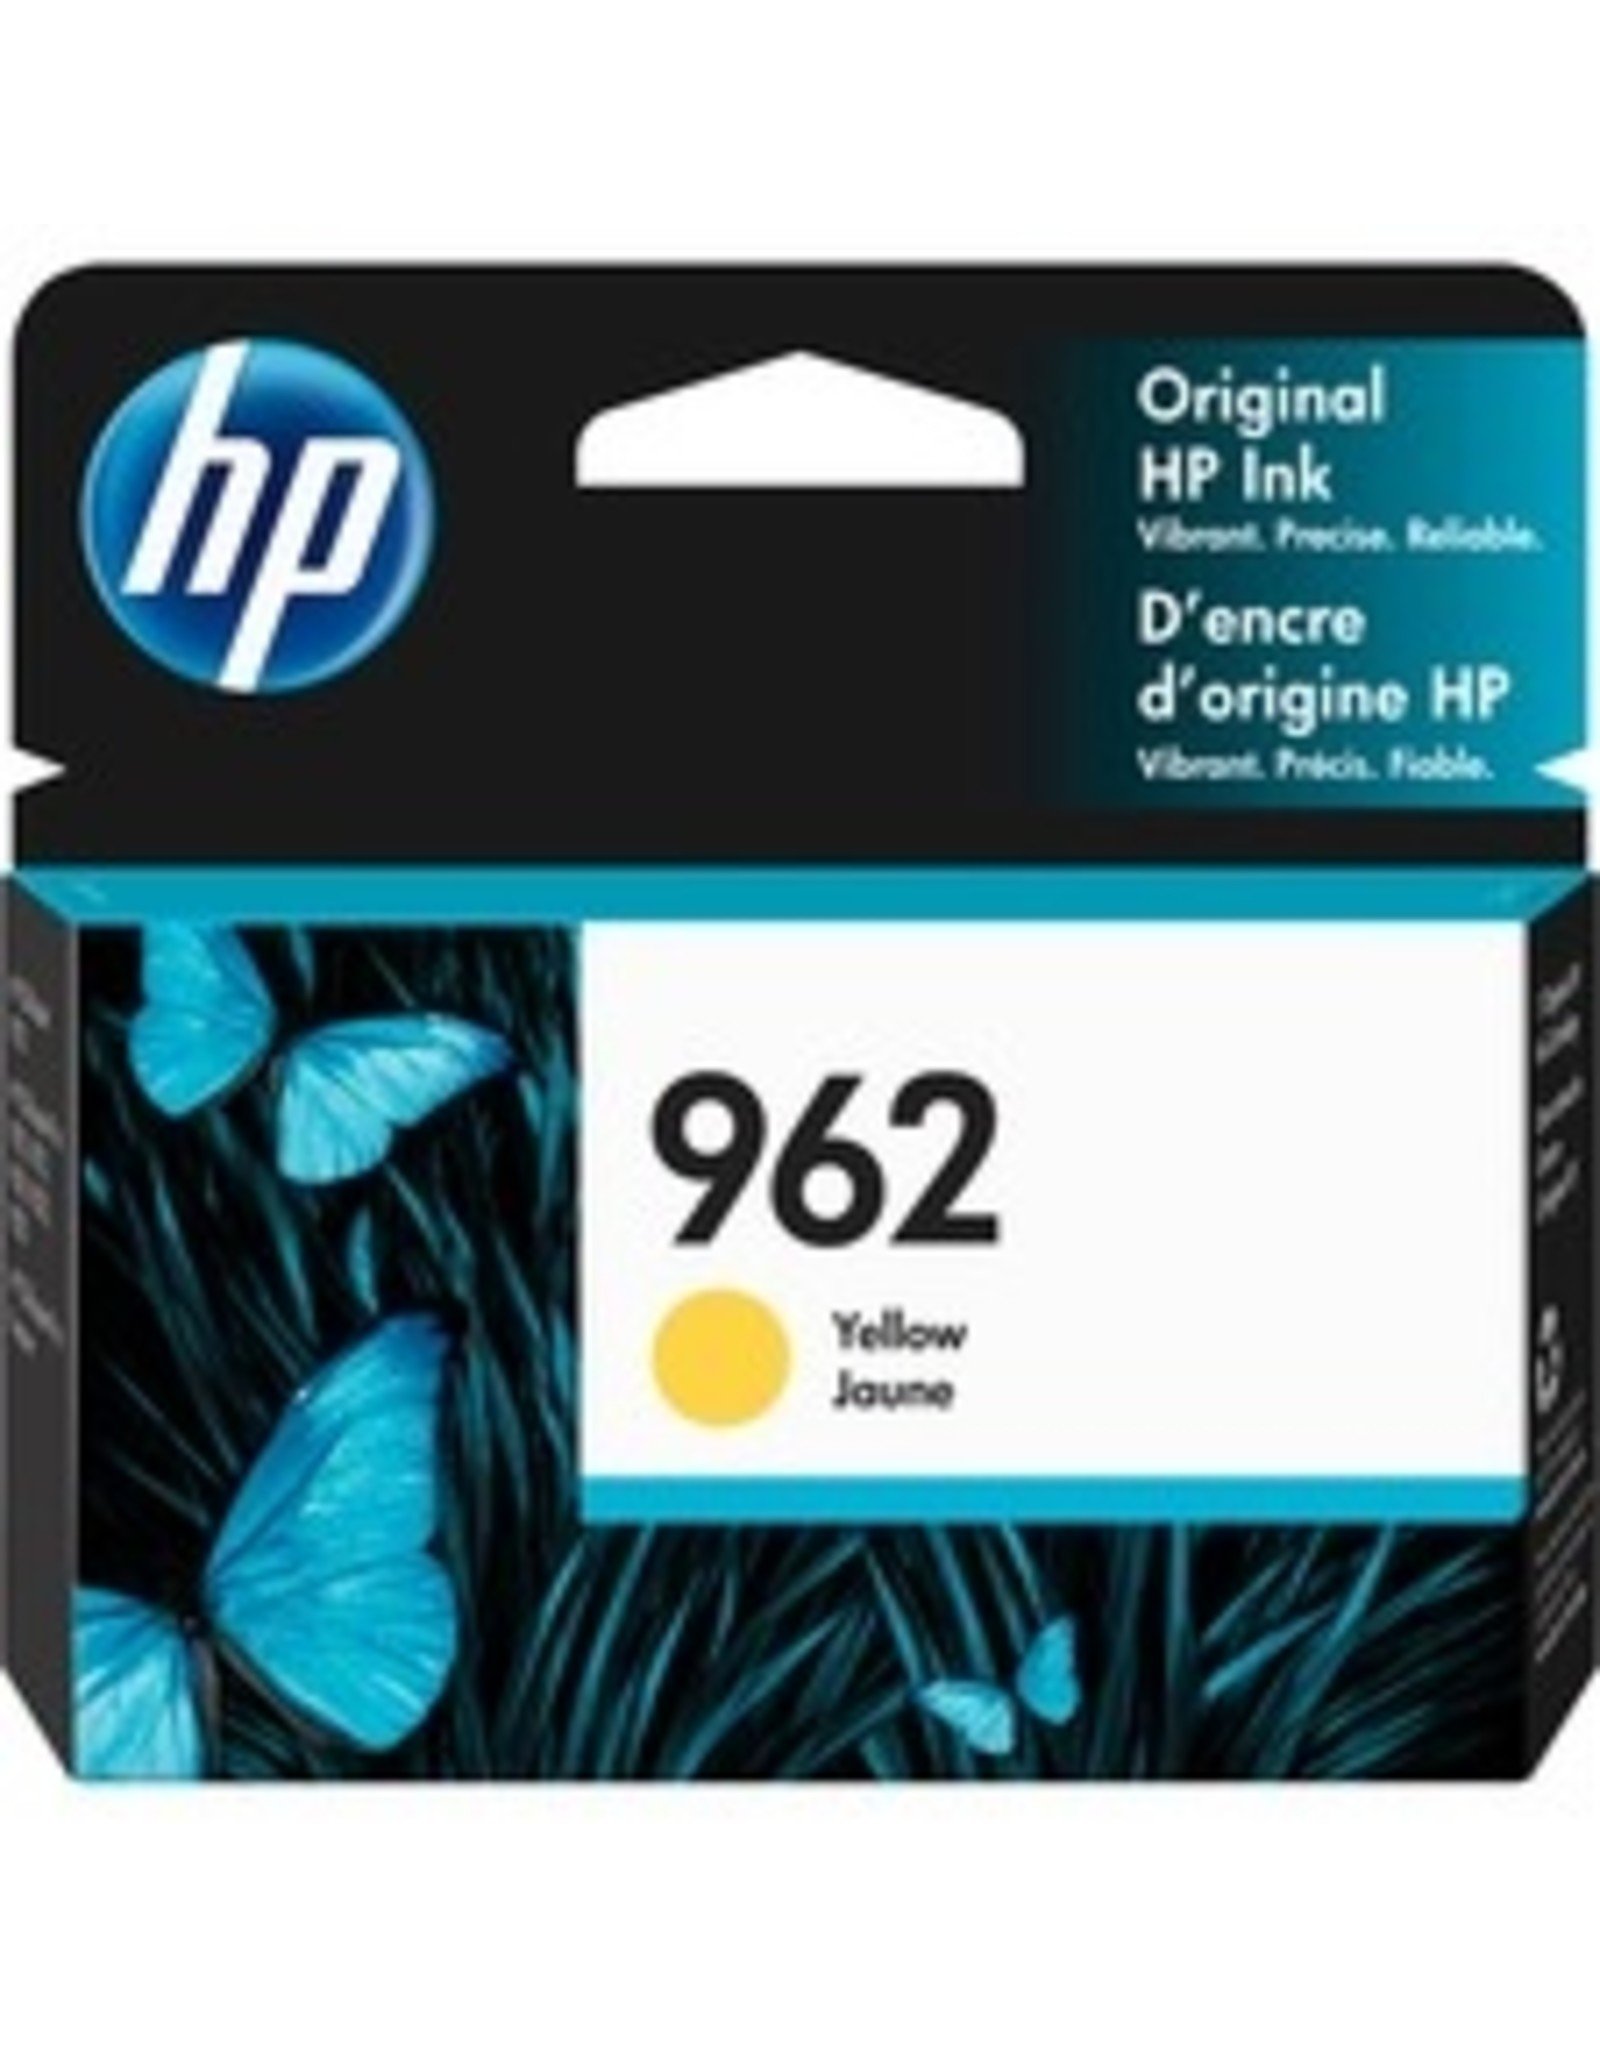 HP HP 962 Original Ink Cartridge - Yellow